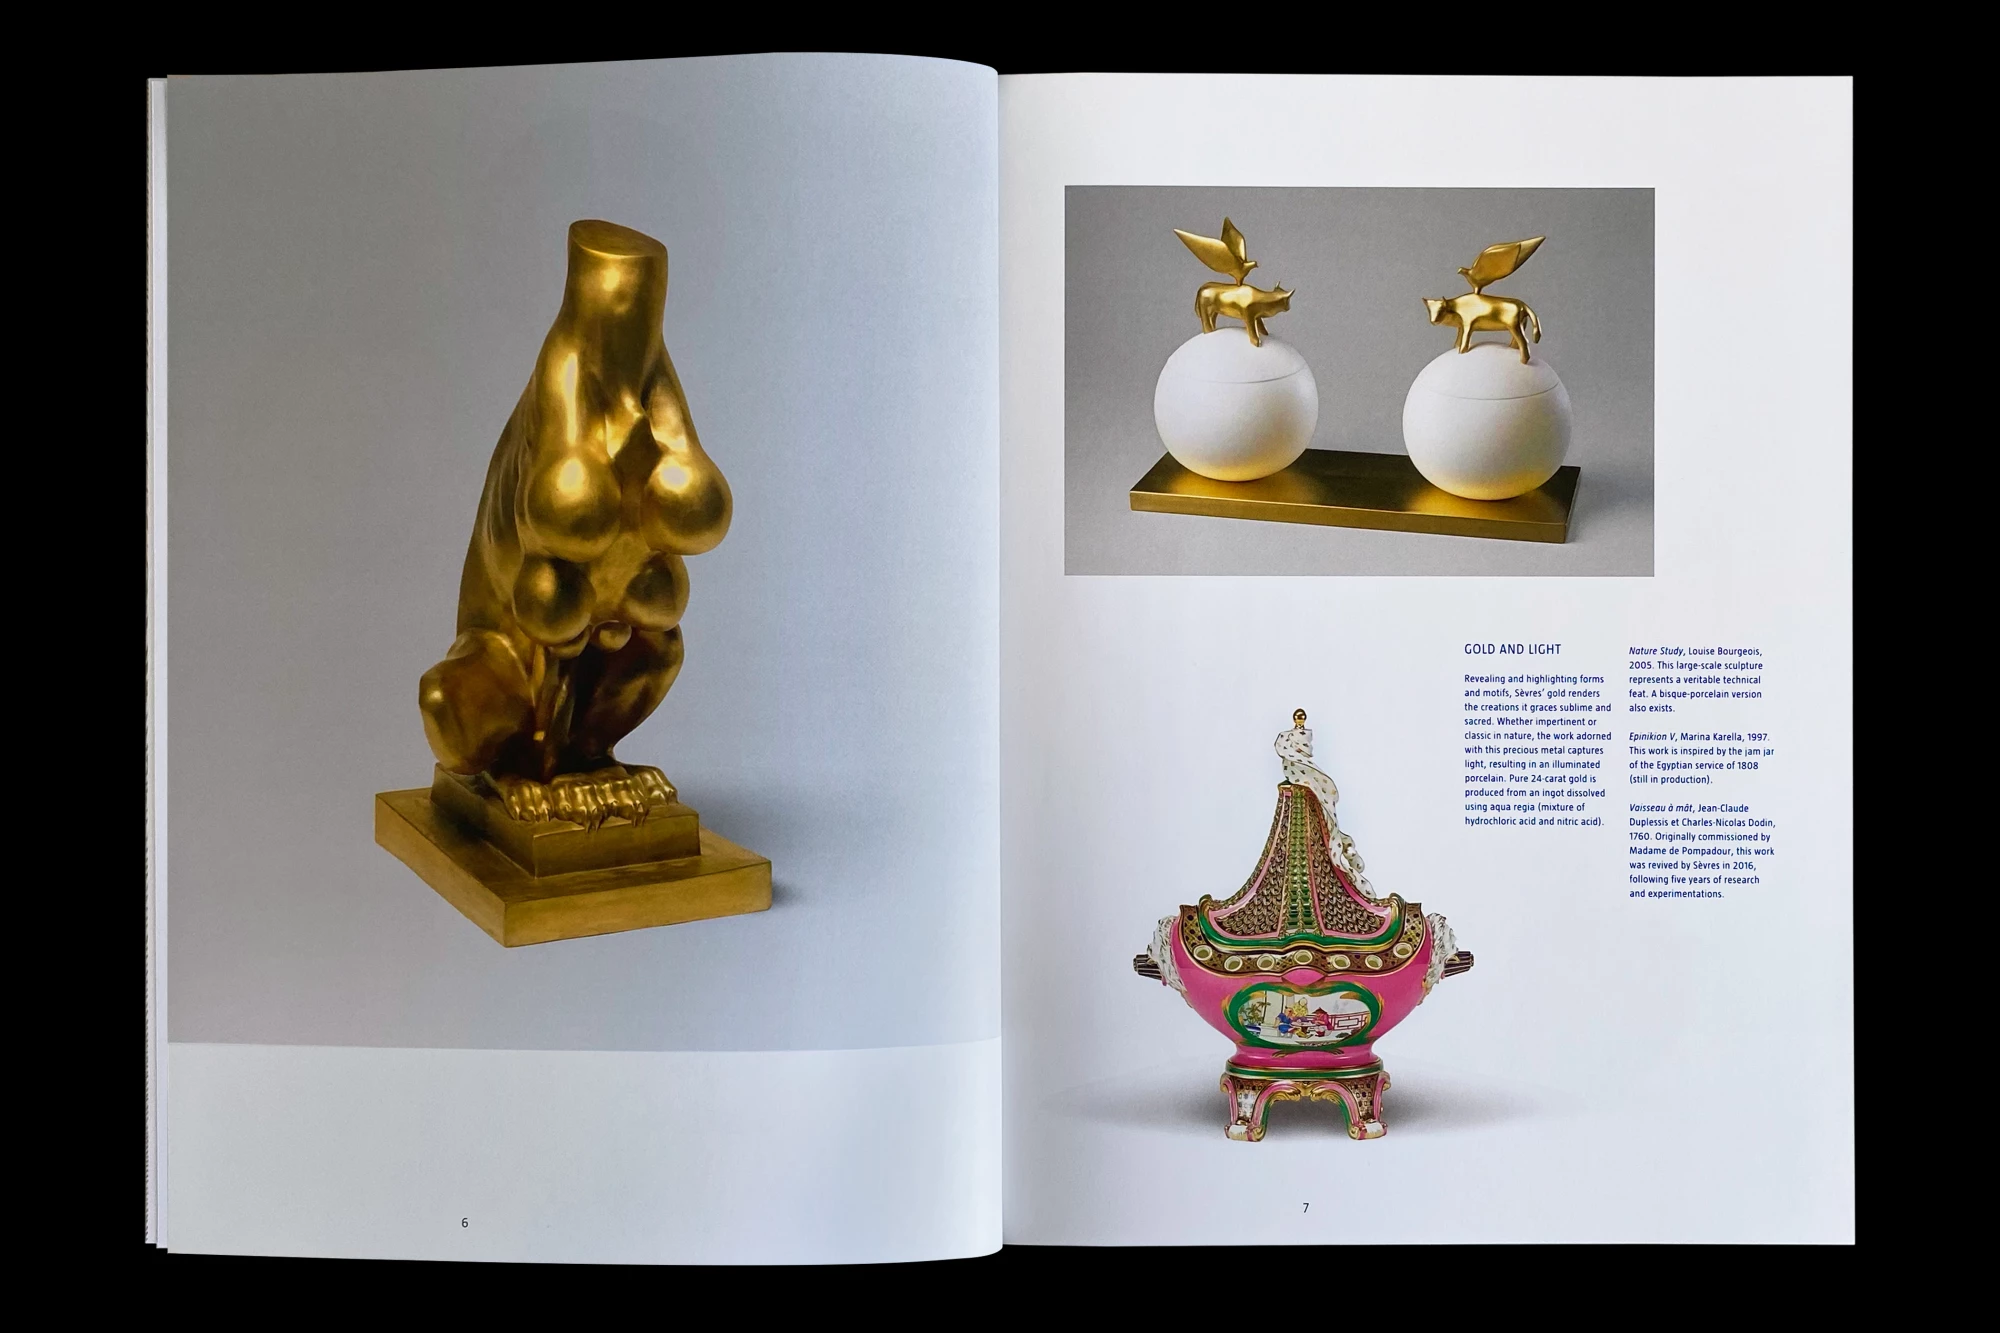 Léo Grunstein - Promotional brochure, Sèvres, Manufacture et musée nationaux, Publication, 2018